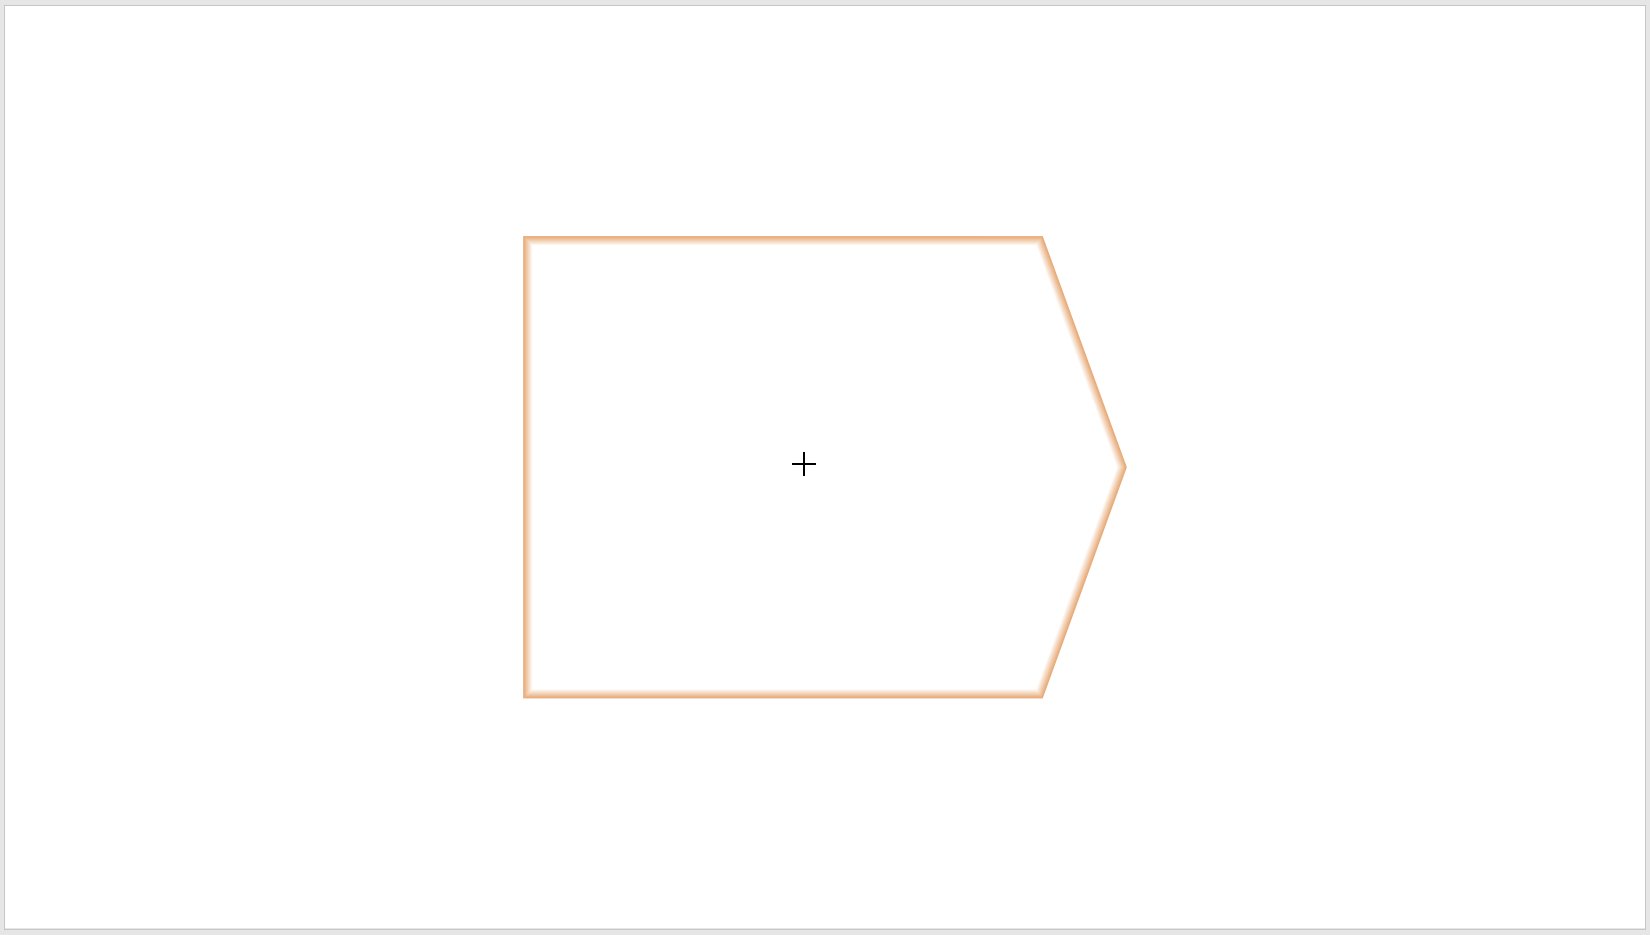 插入五边形时显示的占位符边框.